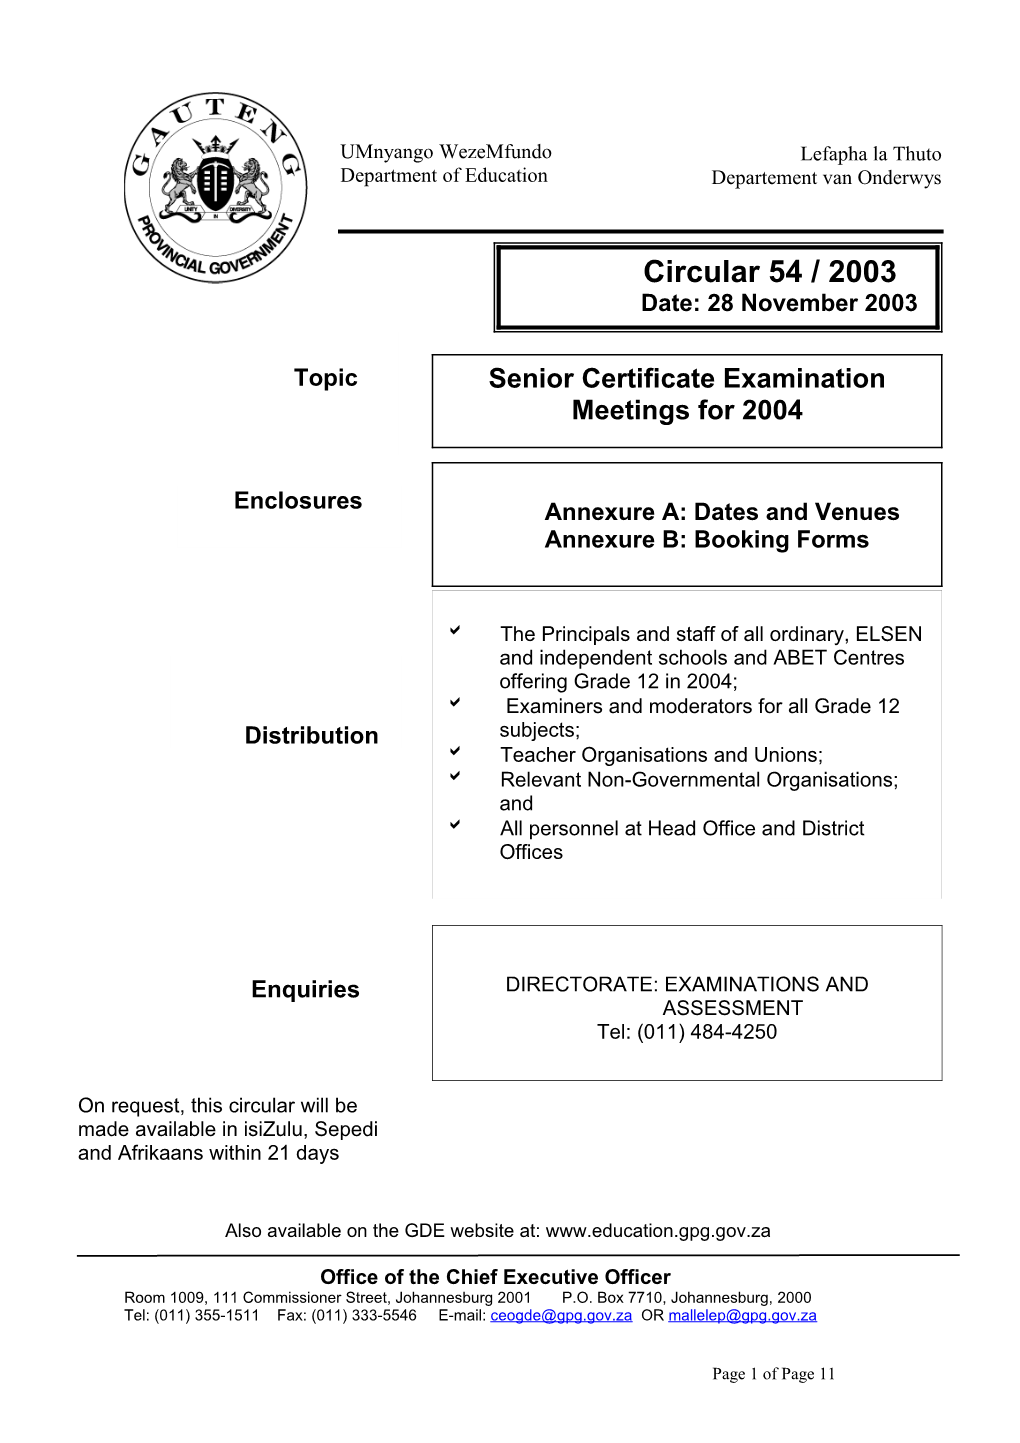 Circ 54 of 2003 Senior Certificate Examination